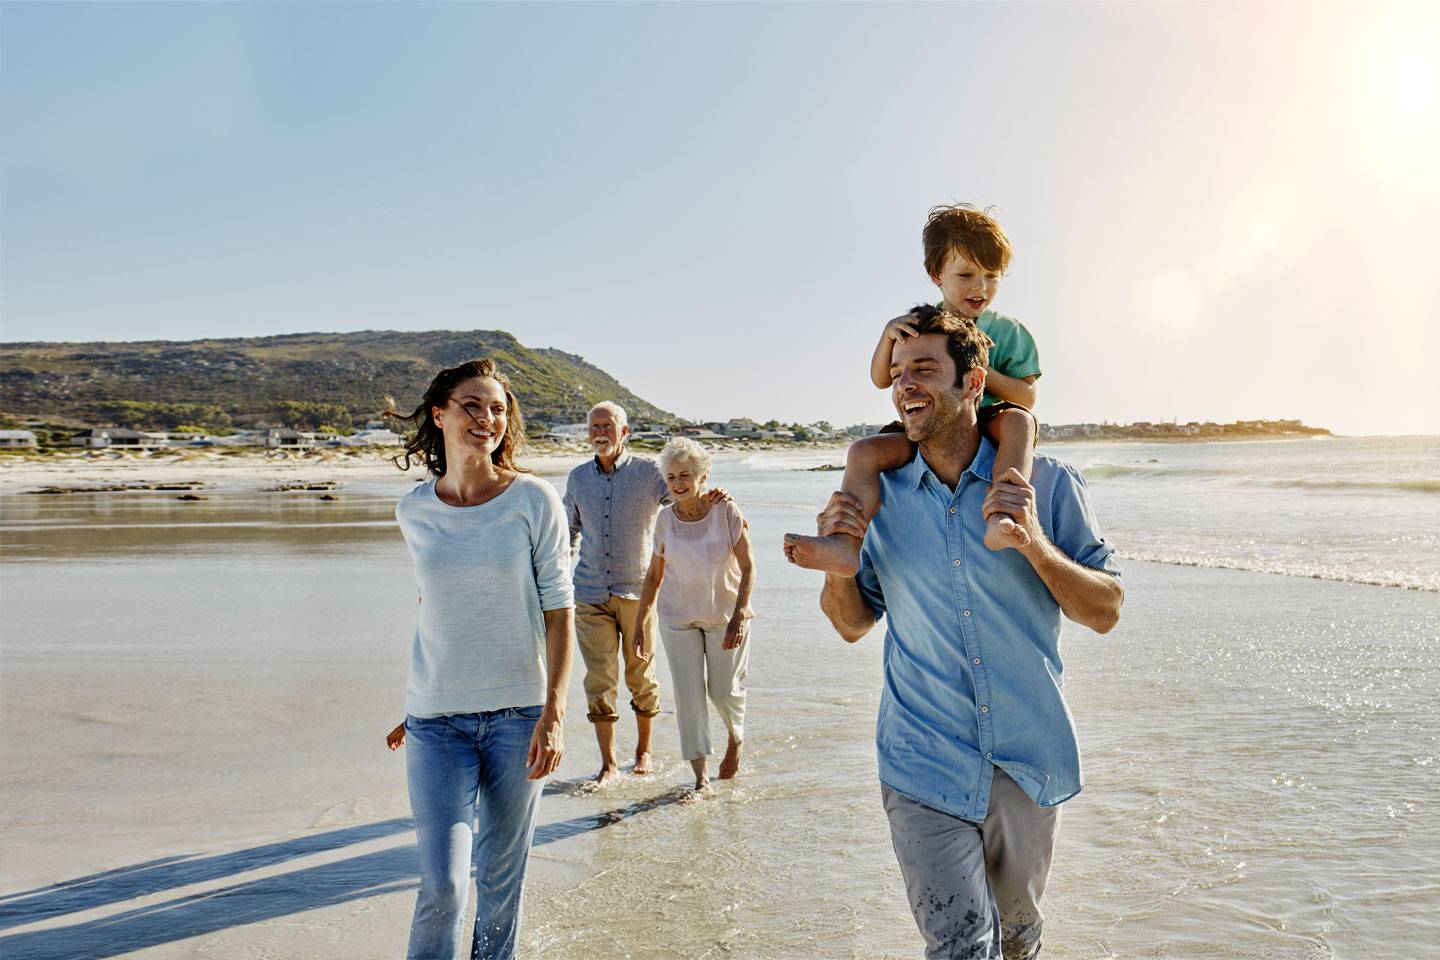 Drei Generationen – Großeltern, Eltern und Kind – gehen lachend am Strand spazieren.